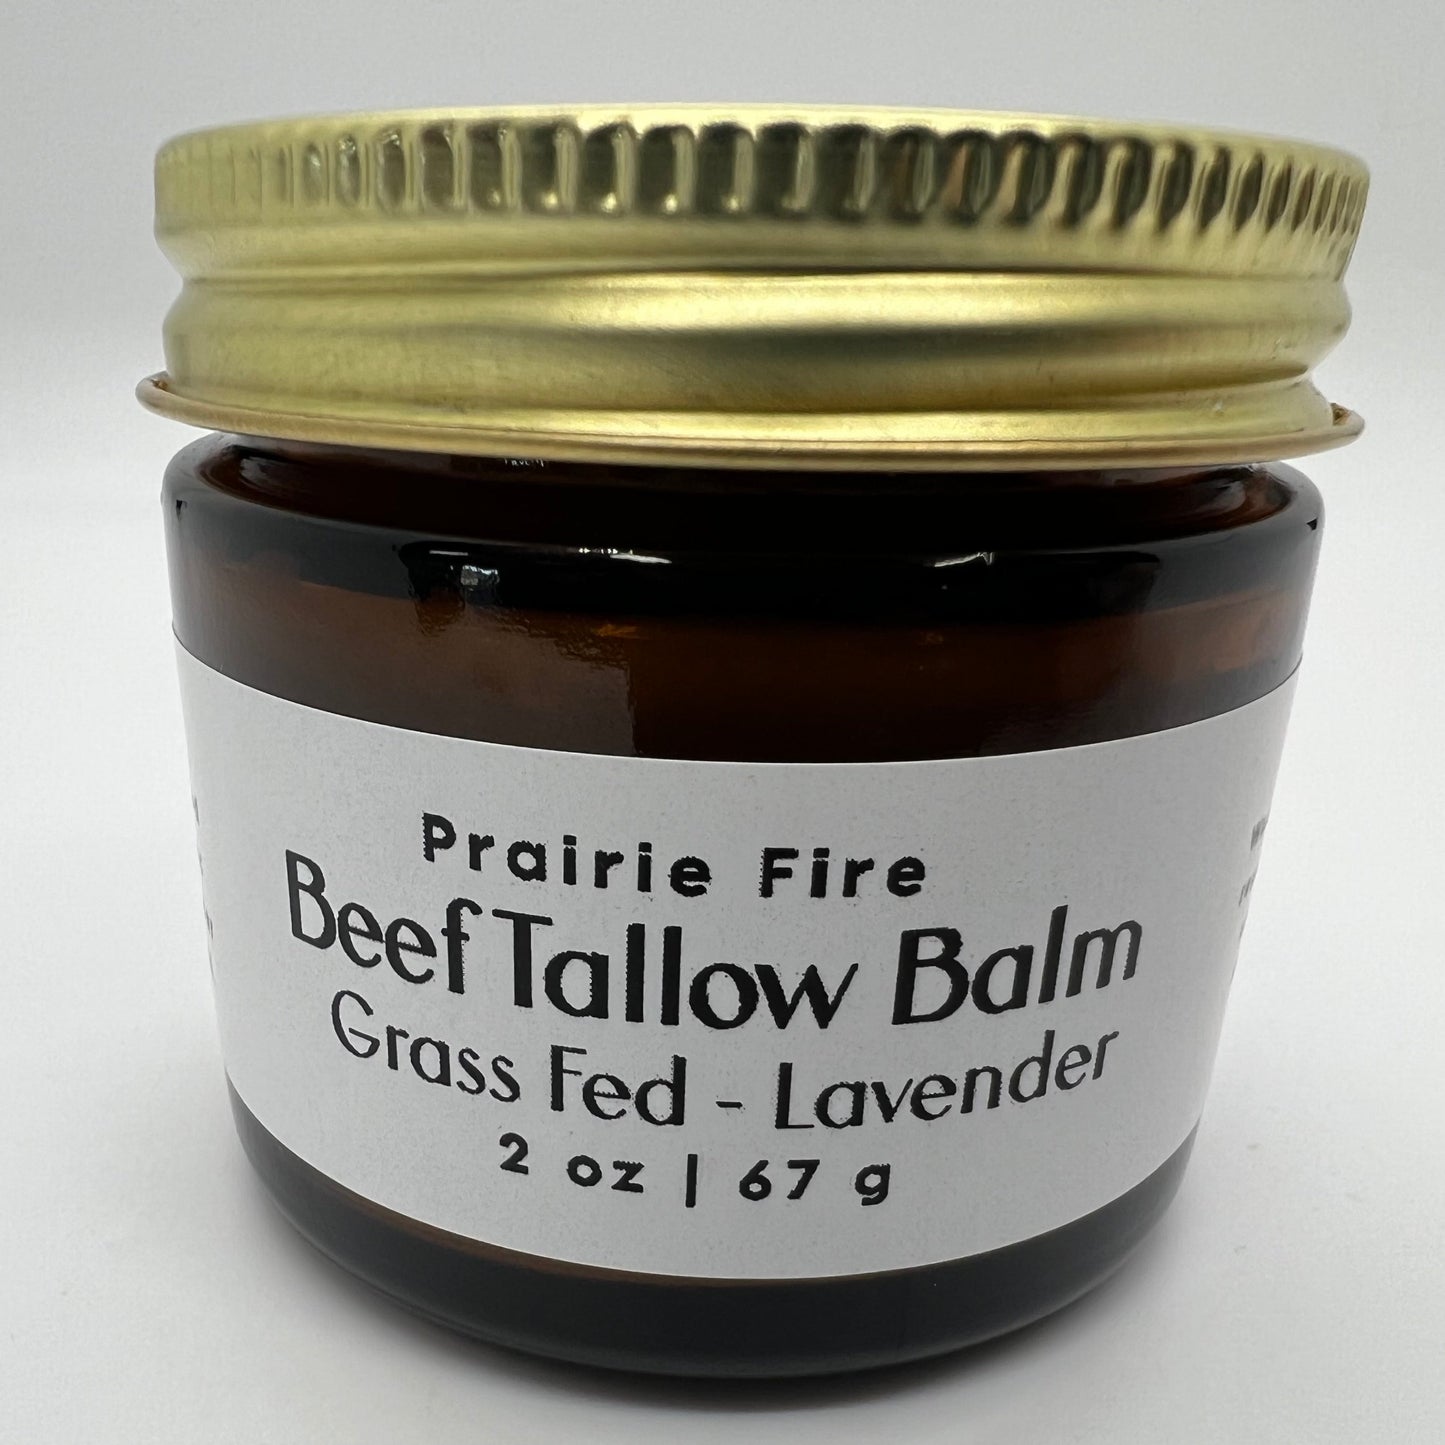 Beef Tallow Balm - 2 oz - Organic Grass Fed - Body Butter - Prairie Fire Kansas Native Pasture